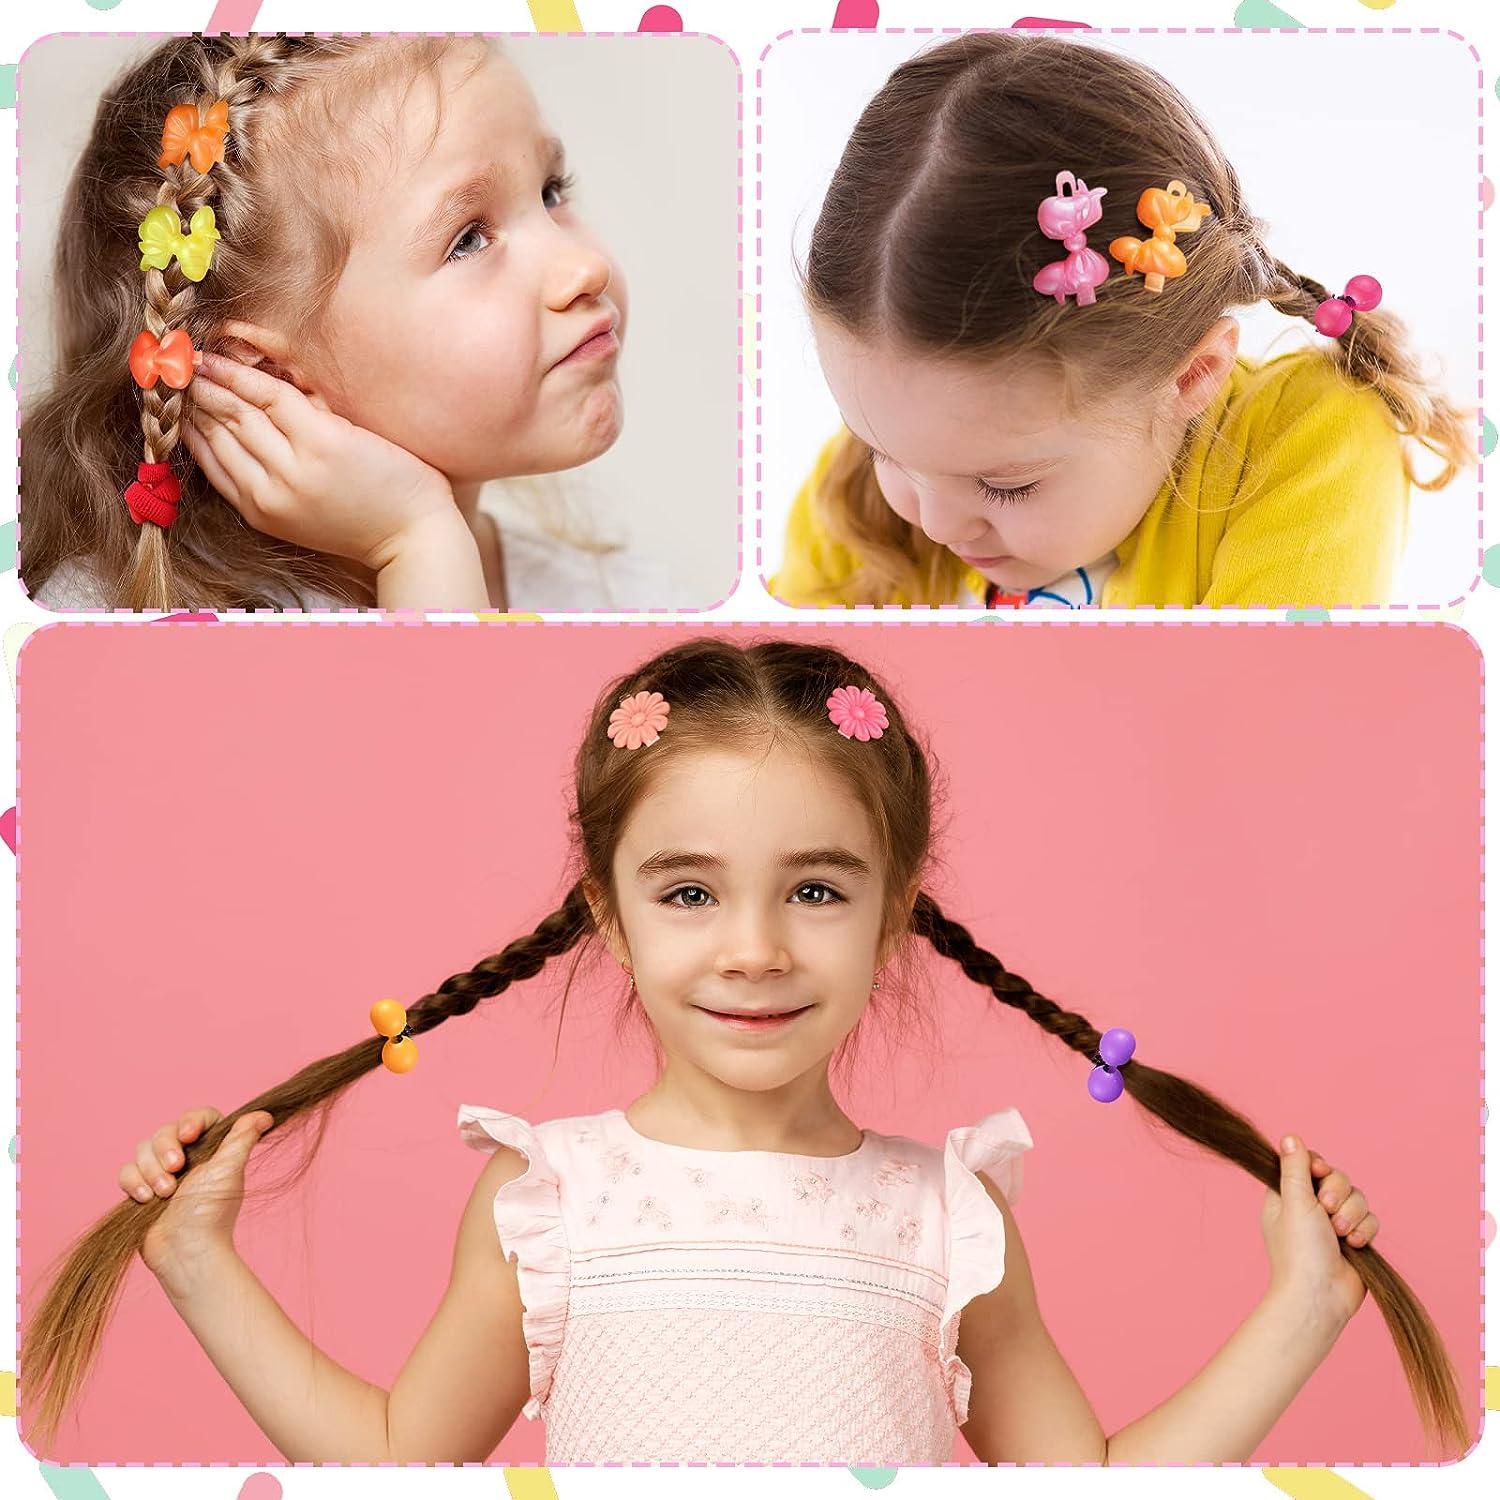 Girls Children's Cute Bow Hair Clips Set Decorative Hair